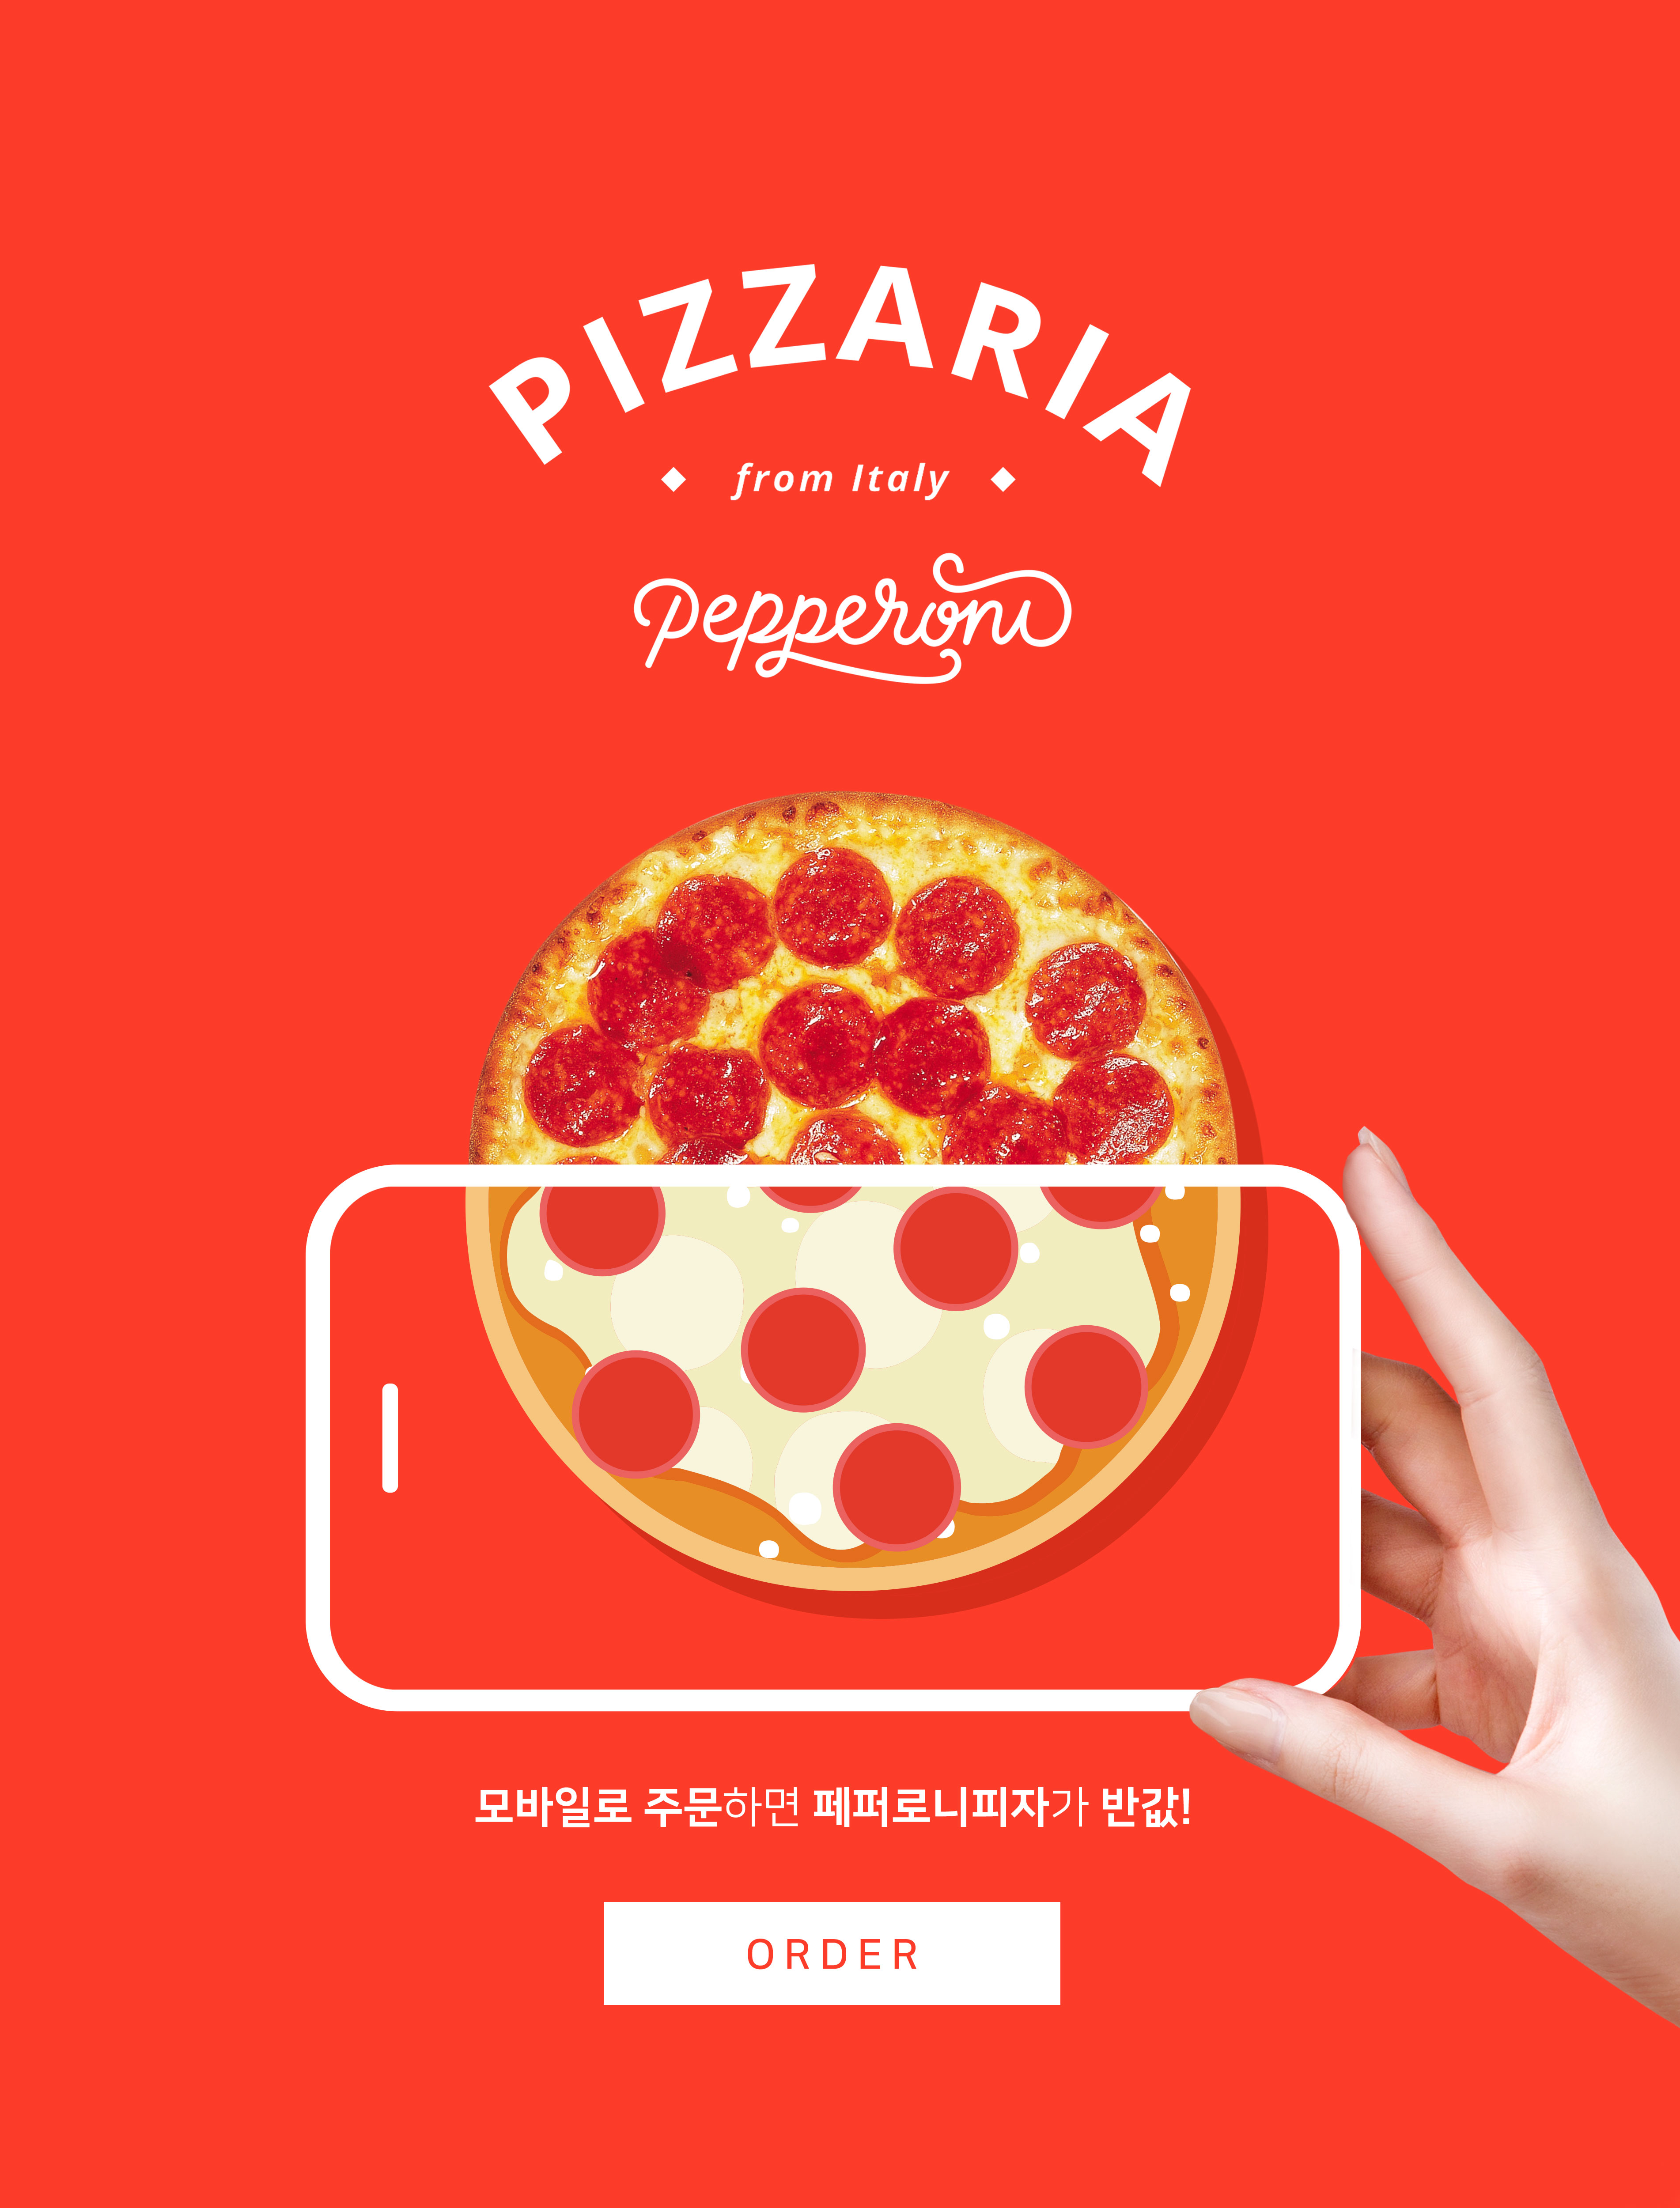 手机订购披萨半价活动宣传海报PSD素材第一素材精选素材插图